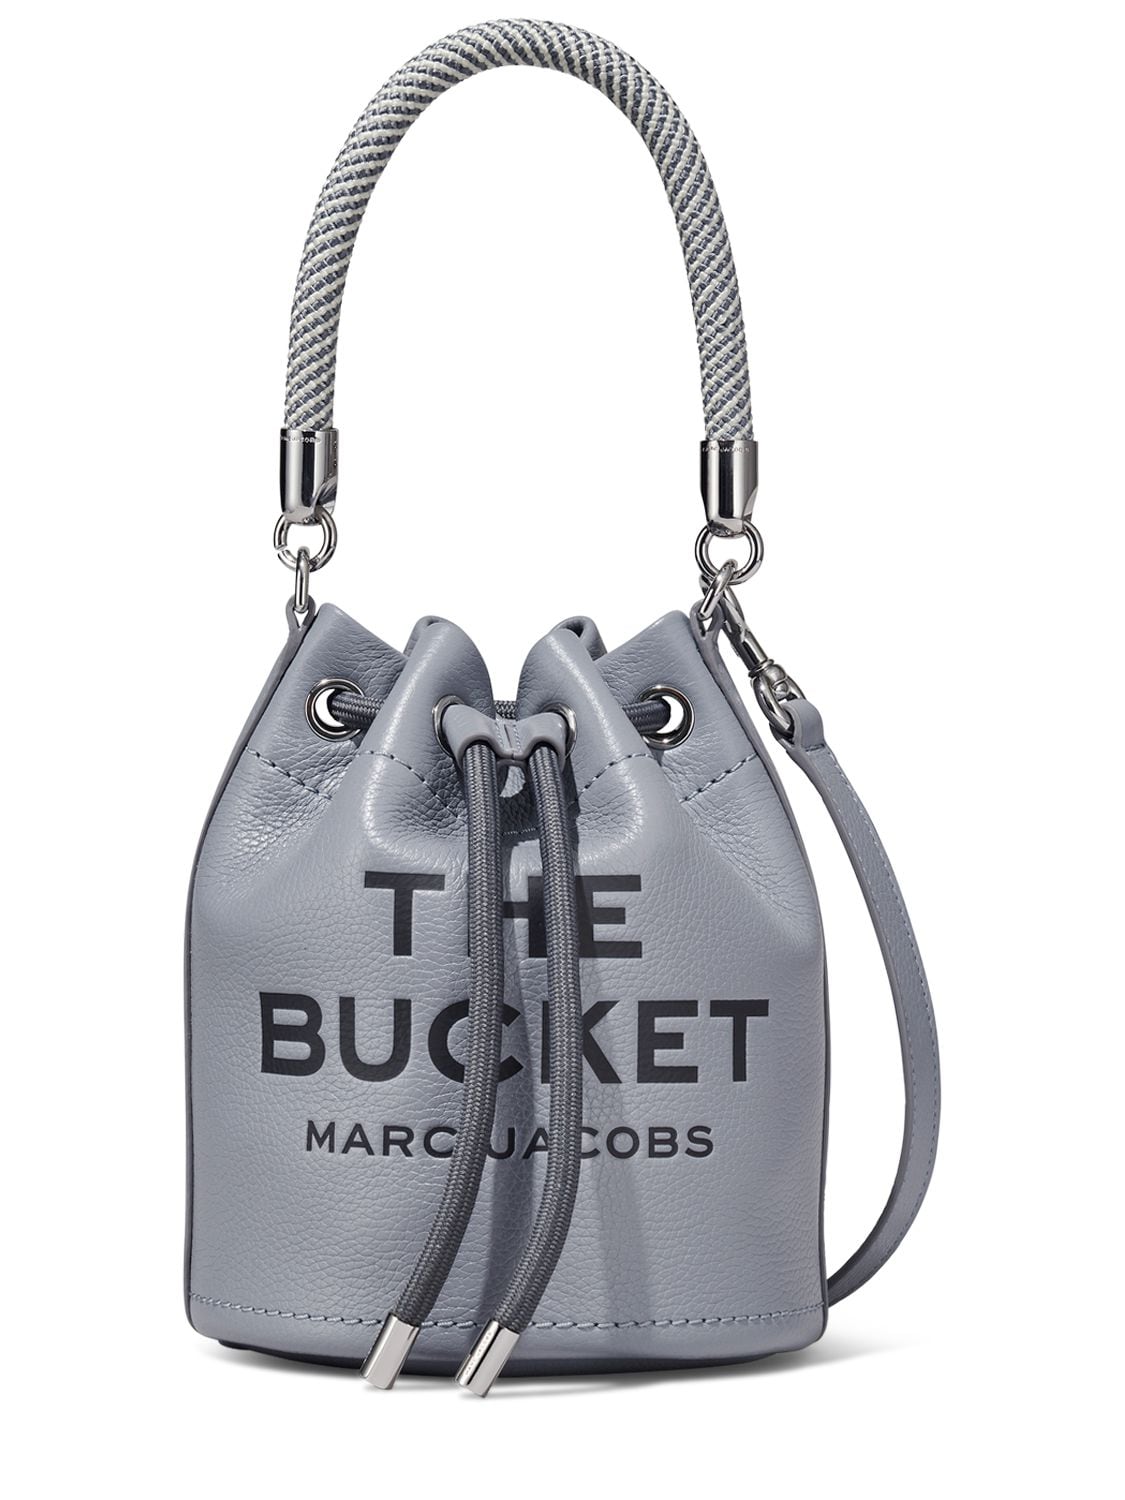 The Bucket Leather Bag - MARC JACOBS (THE) - Modalova